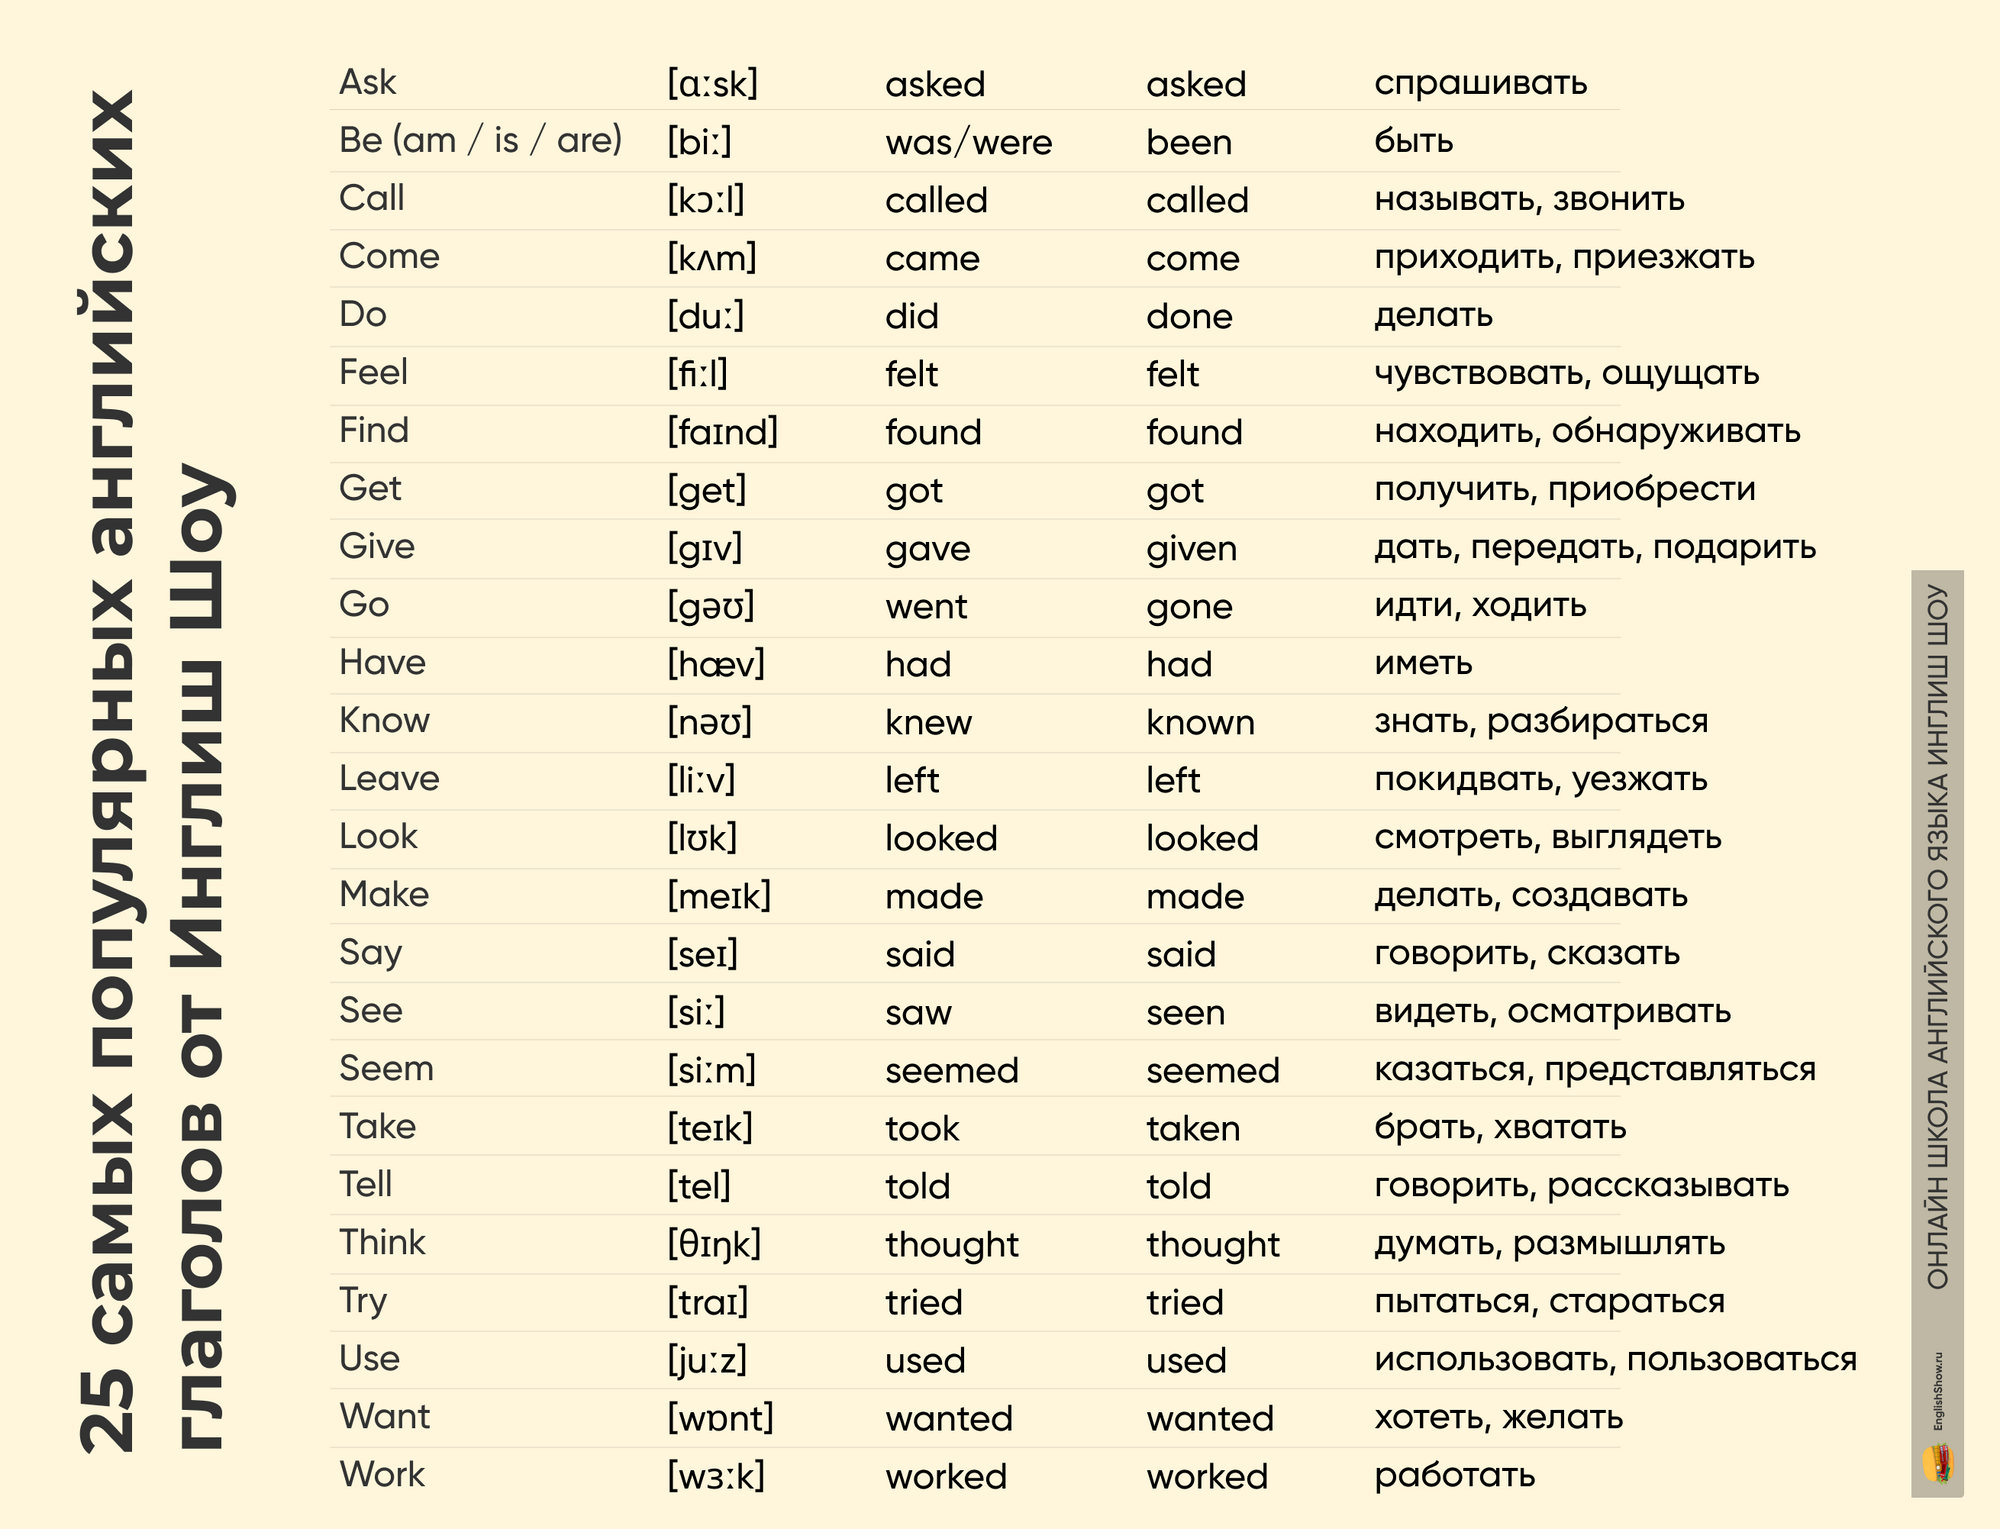 Таблица “Вспомогательные глаголы в английском языке”